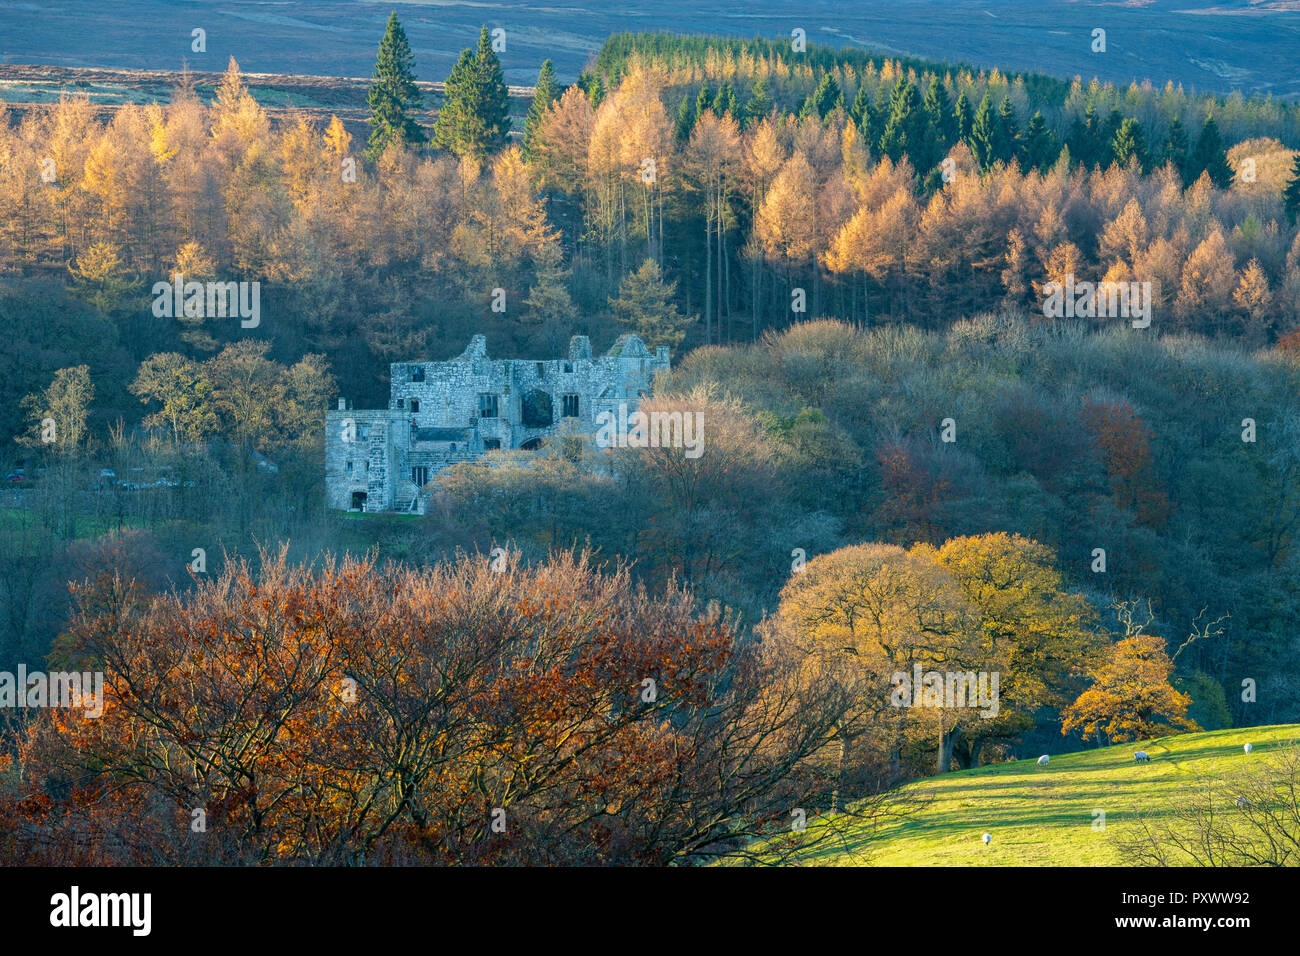 Herbst Blick von Barden Tower, historische Ruinen, die von dichten Wäldern Bäume mit bunten Laub - Bolton Abbey Estate, Yorkshire Dales, England, Großbritannien Stockfoto